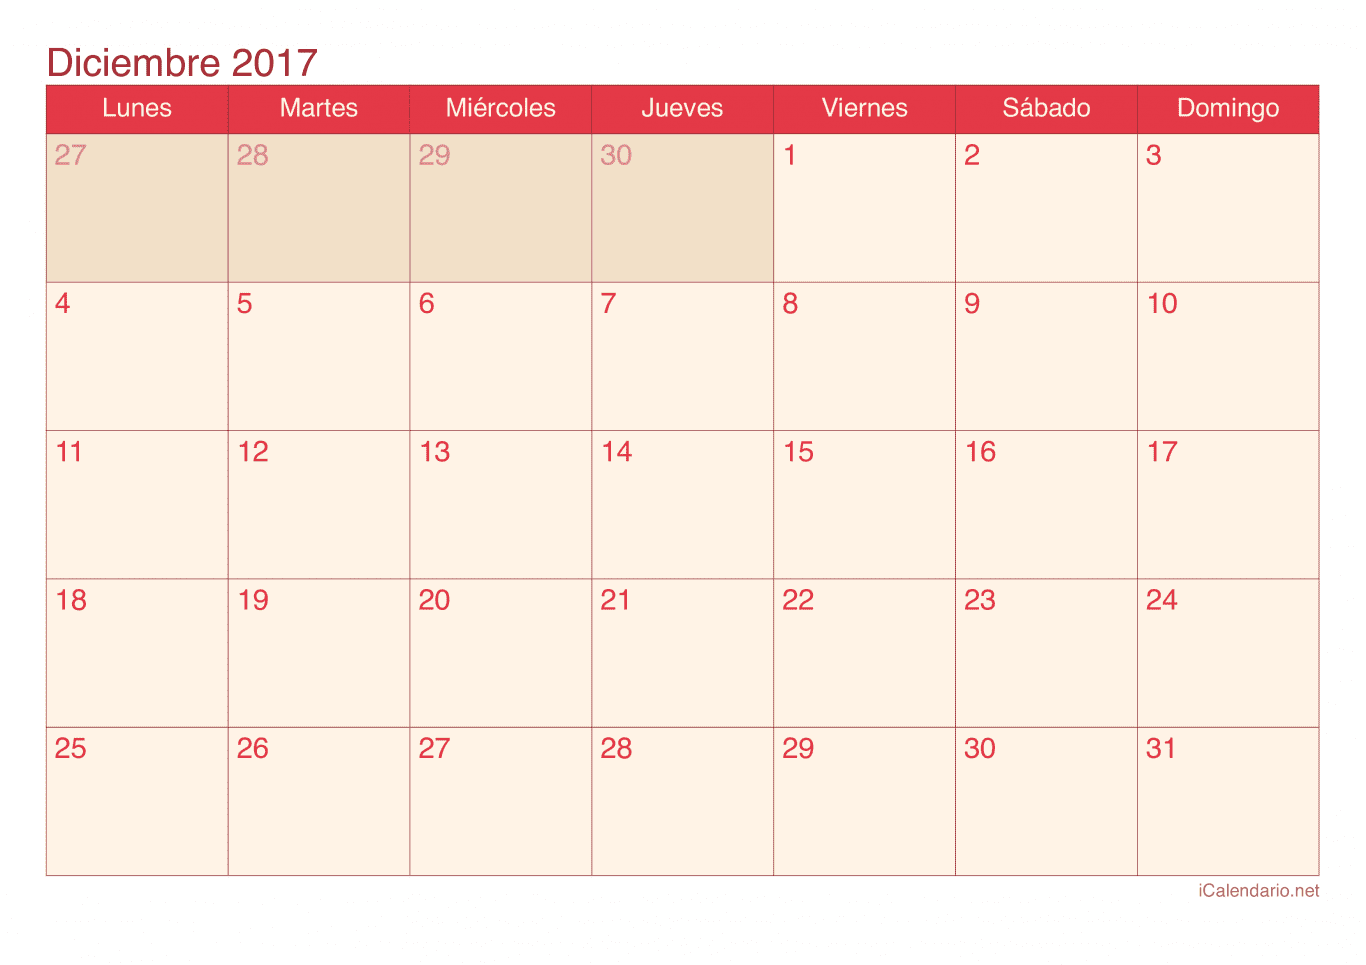 Calendario de diciembre 2017 - Cherry